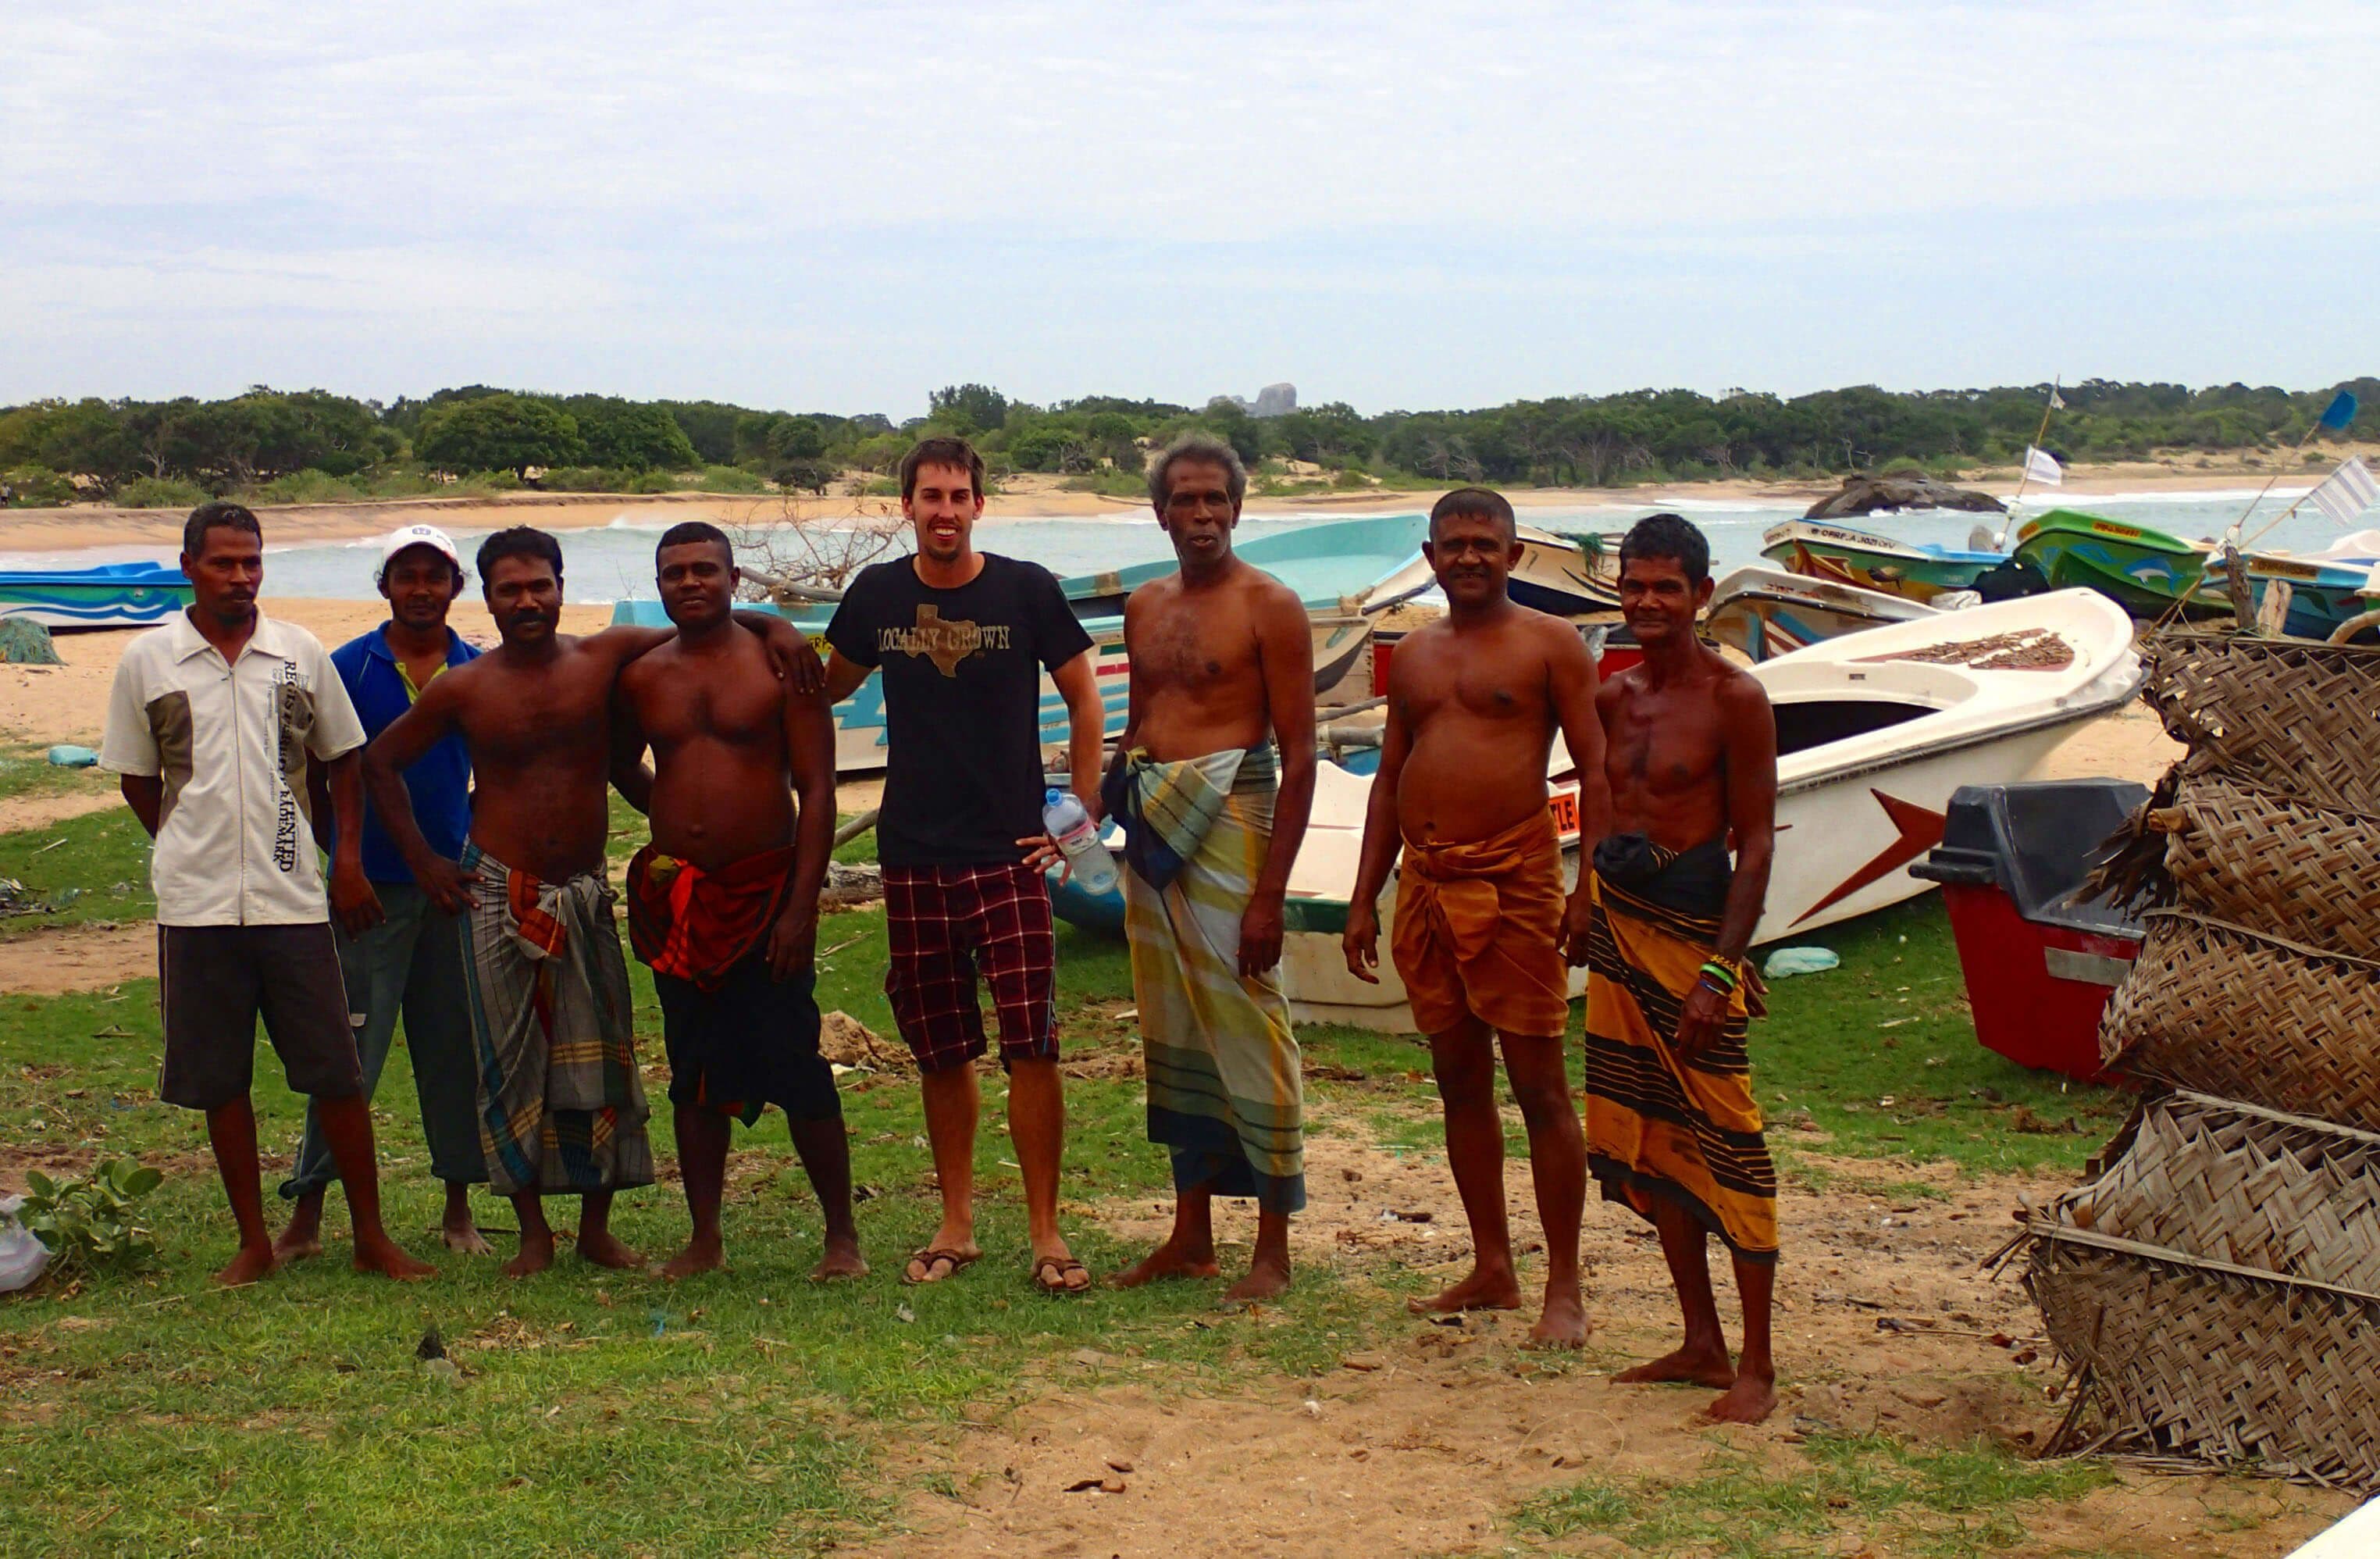 Турист получает социальный опыт с местными рыбаками в Негомбо, Шри-Ланка.